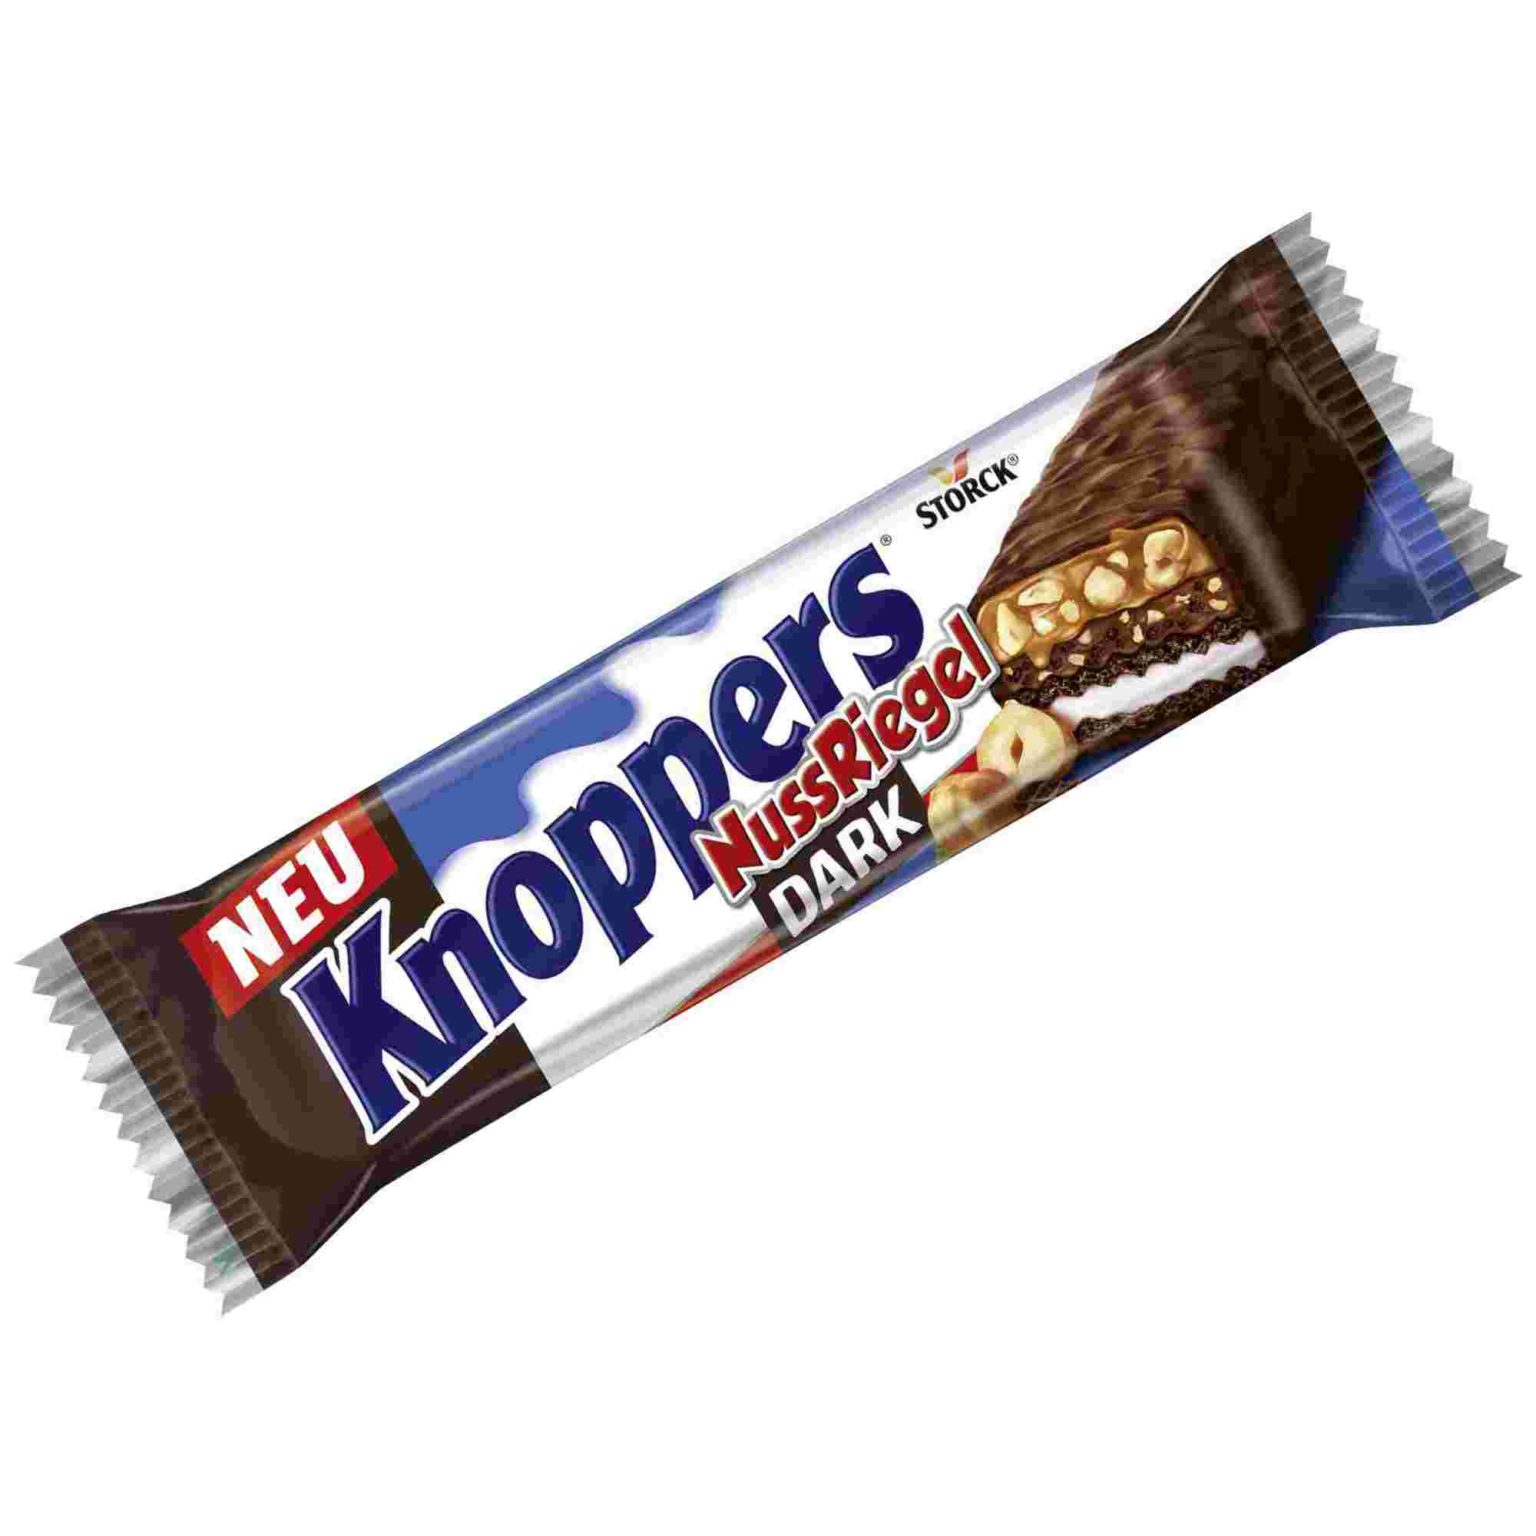 Knoppers NussRiegel Dark 5x40g | Online kaufen im World of Sweets Shop